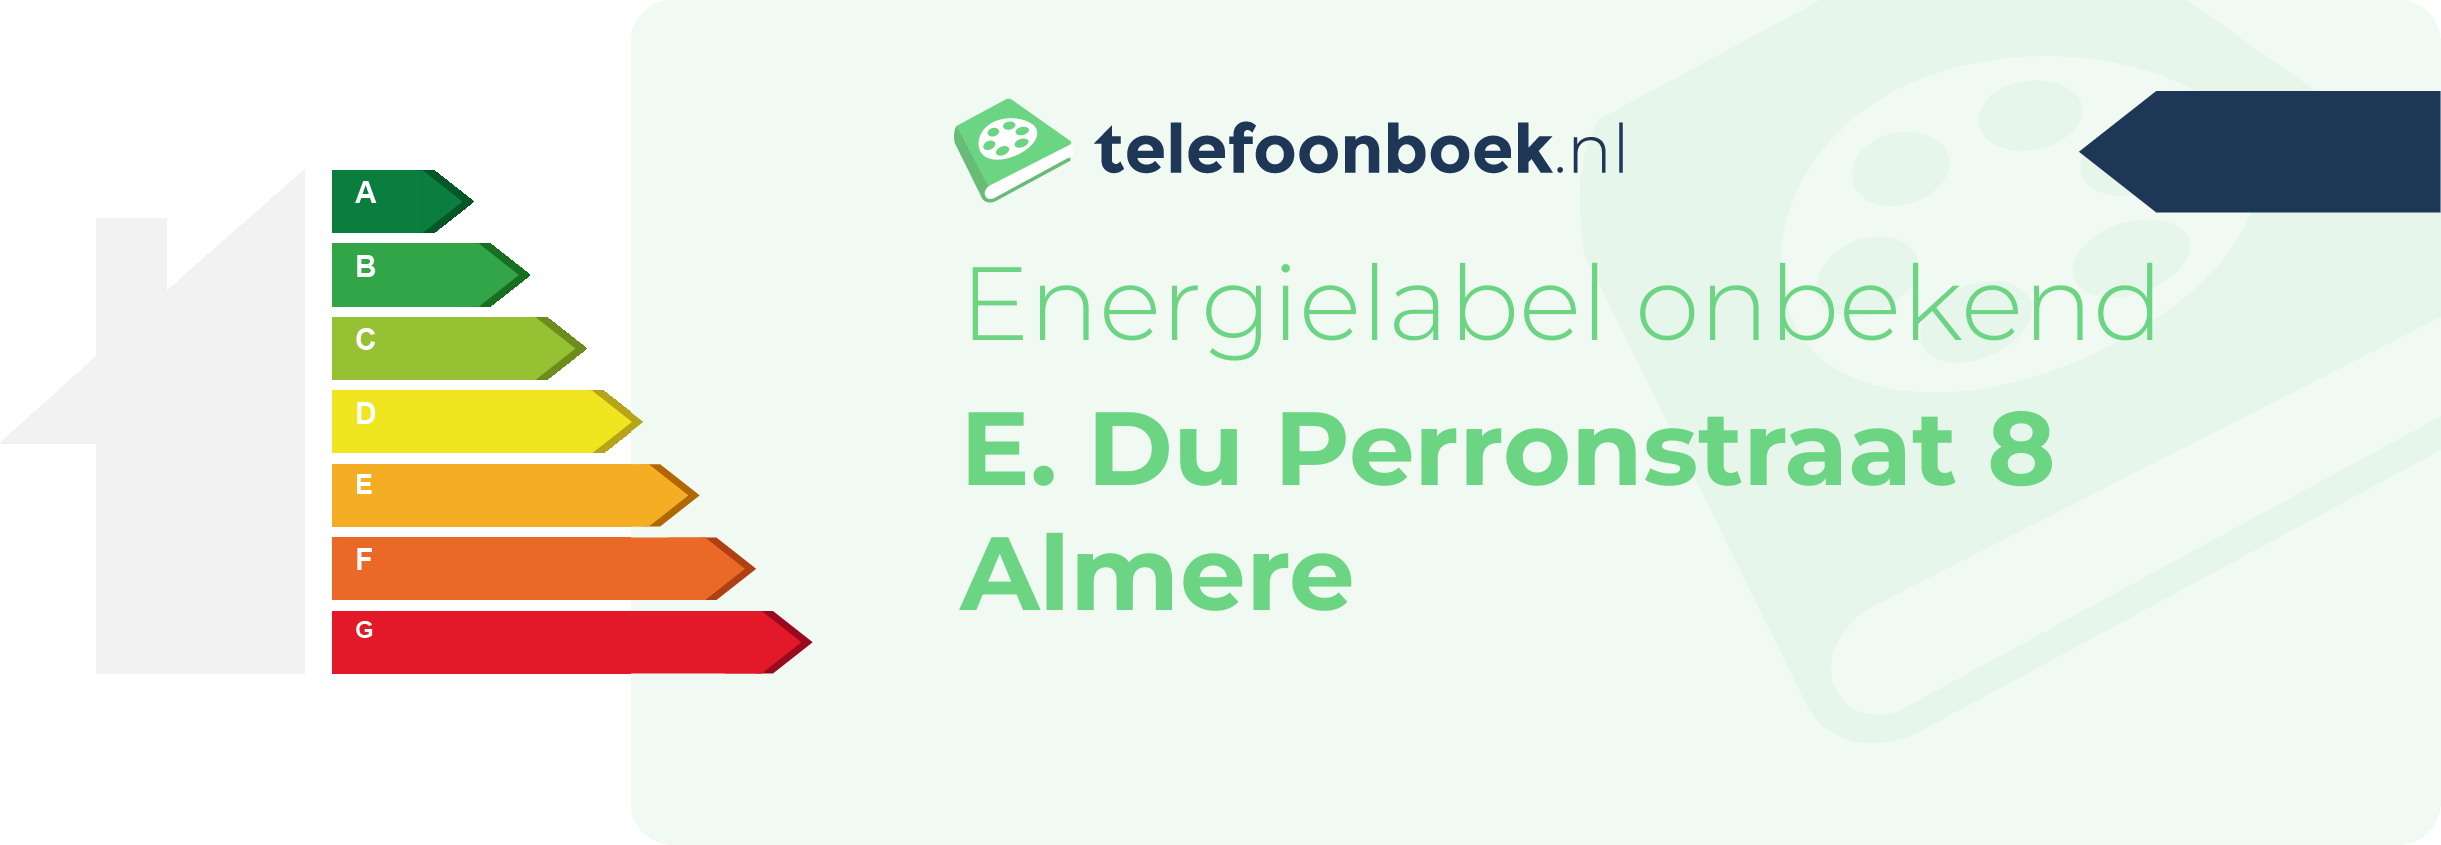 Energielabel E. Du Perronstraat 8 Almere